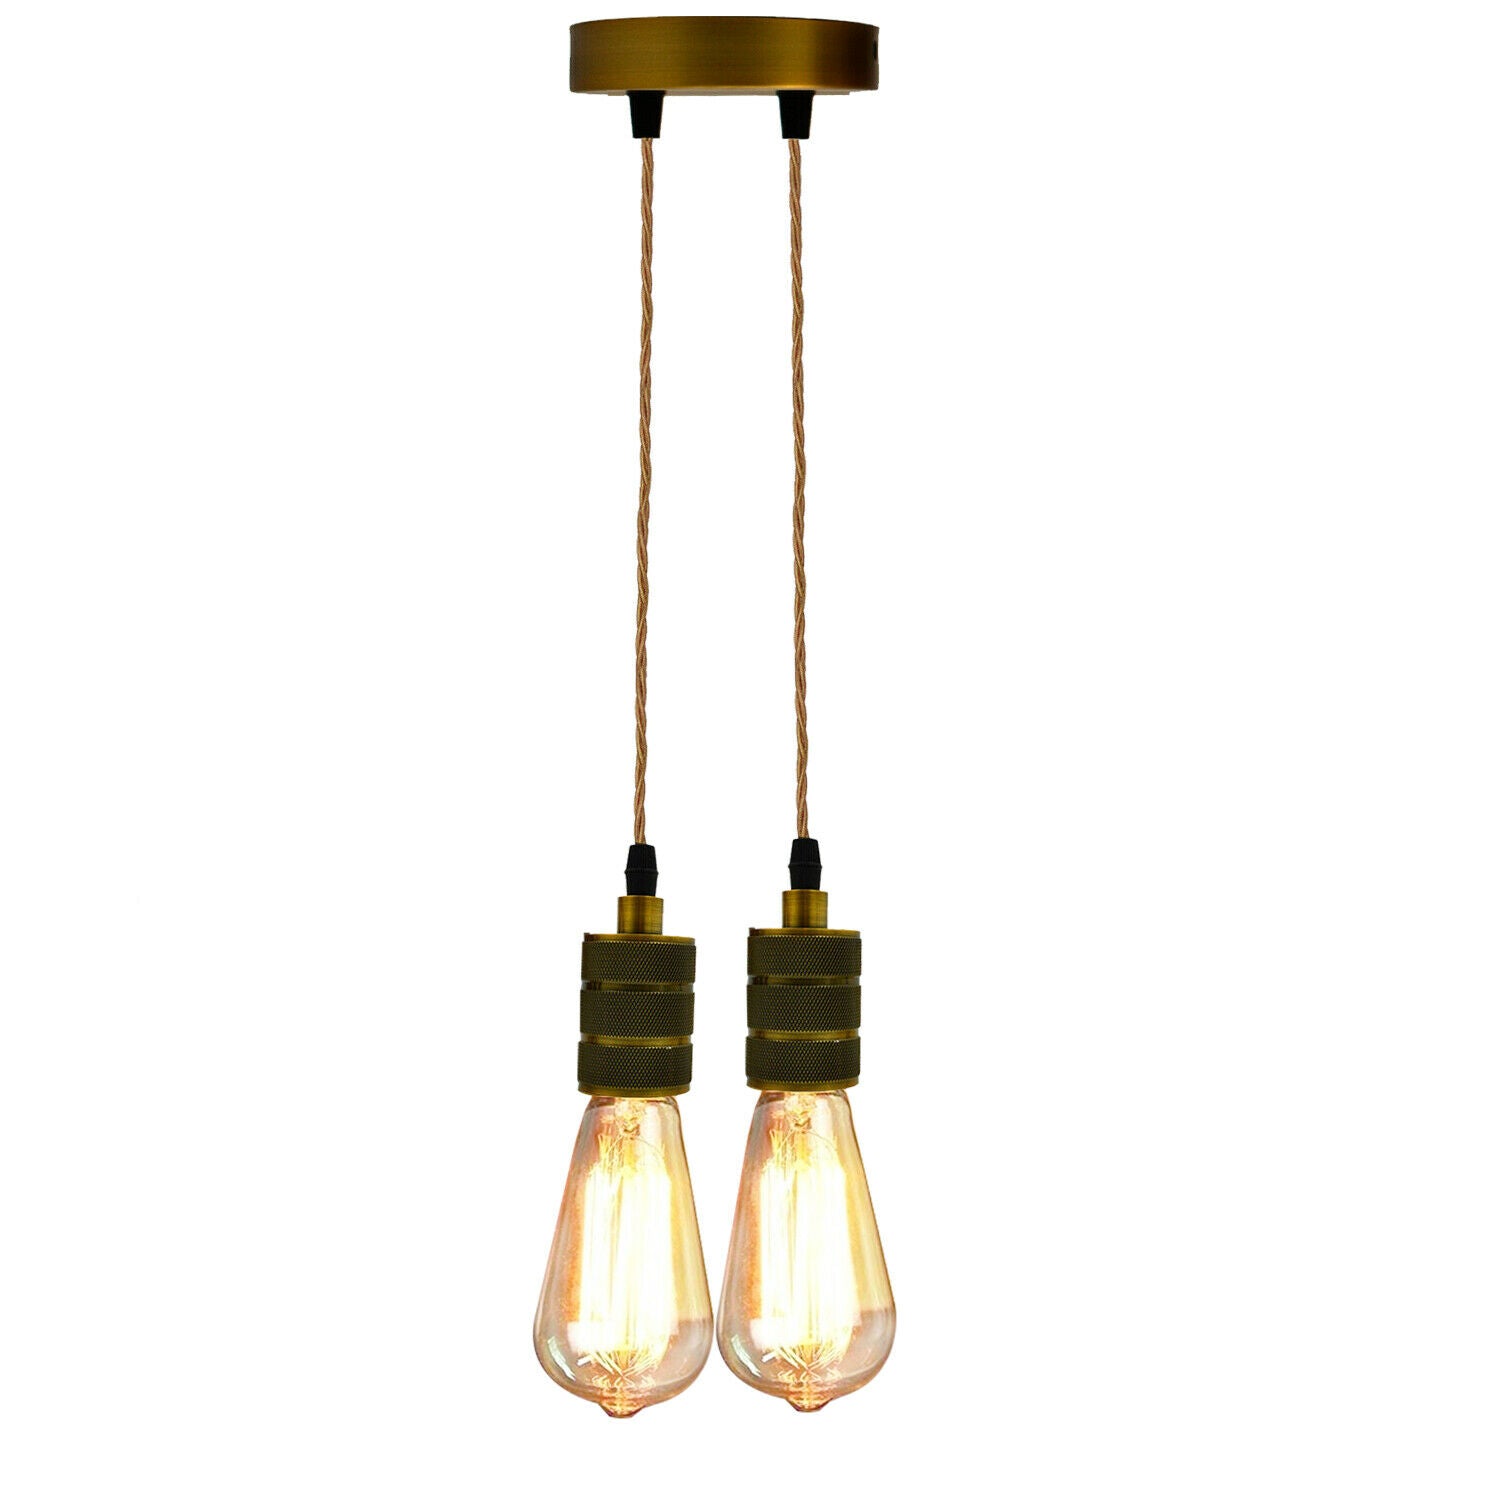 Ceiling Rose Industrial Pendant Light Fabric Flex 3Core Hanging Lamp Holder Kit~2059 - LEDSone UK Ltd